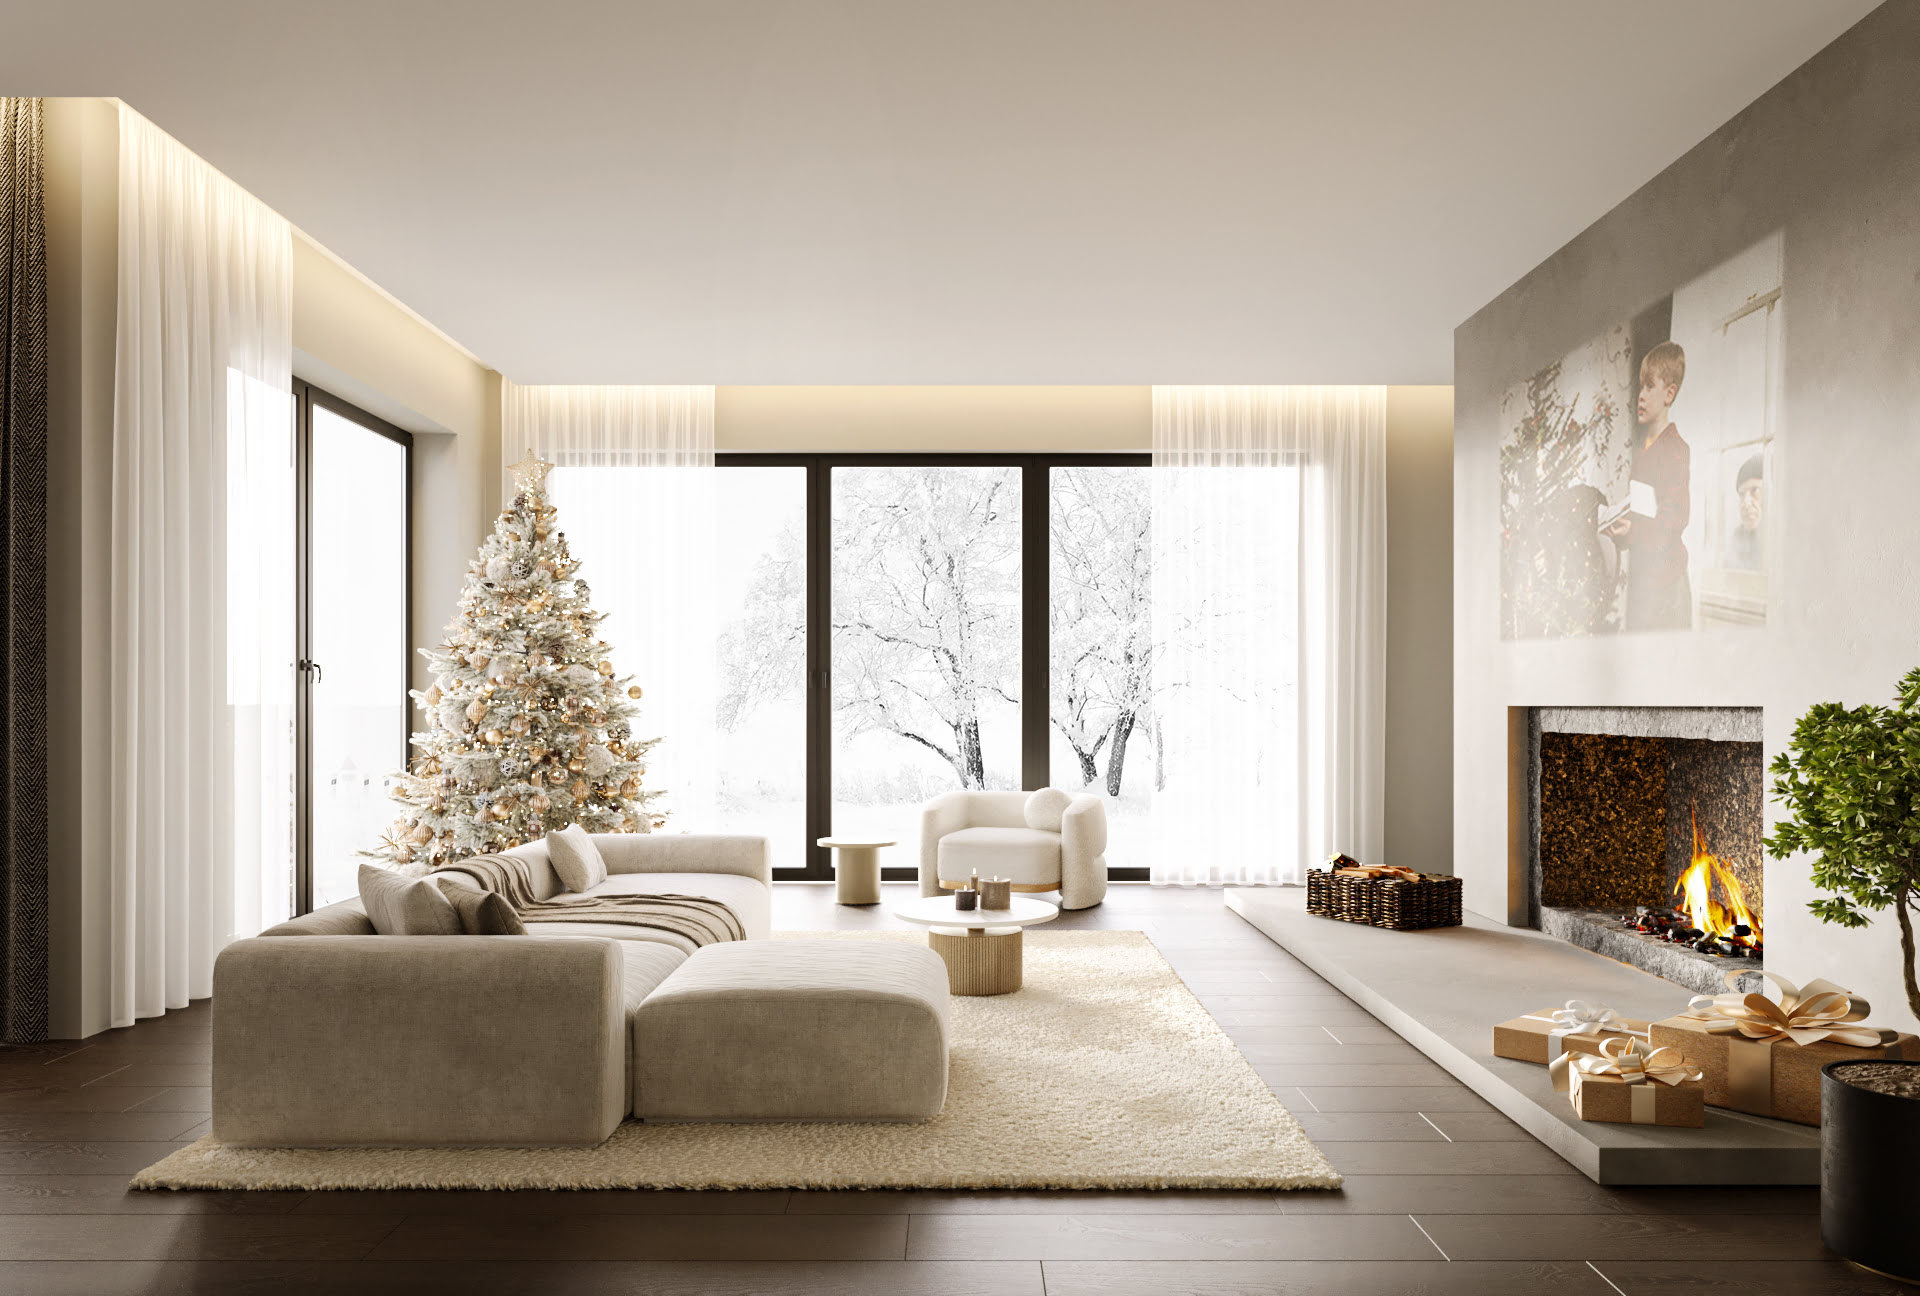 Innenraumvisualisierung eines Wohnbereiches an Weihnachten